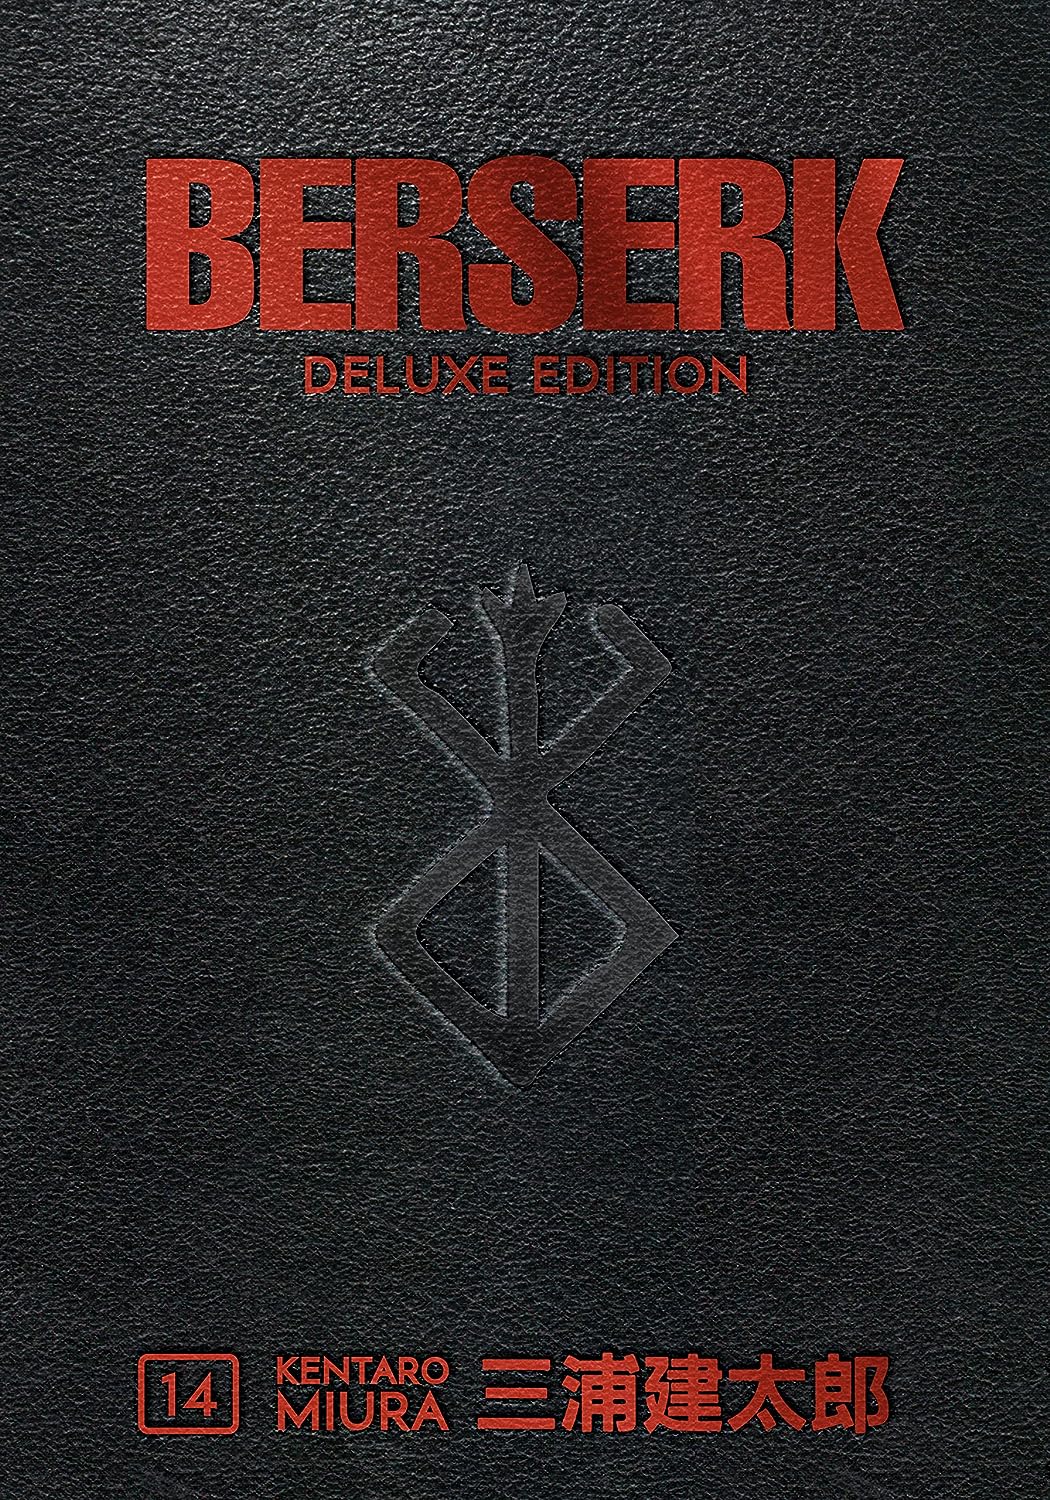 Berserk Deluxe Edition Vol. 14